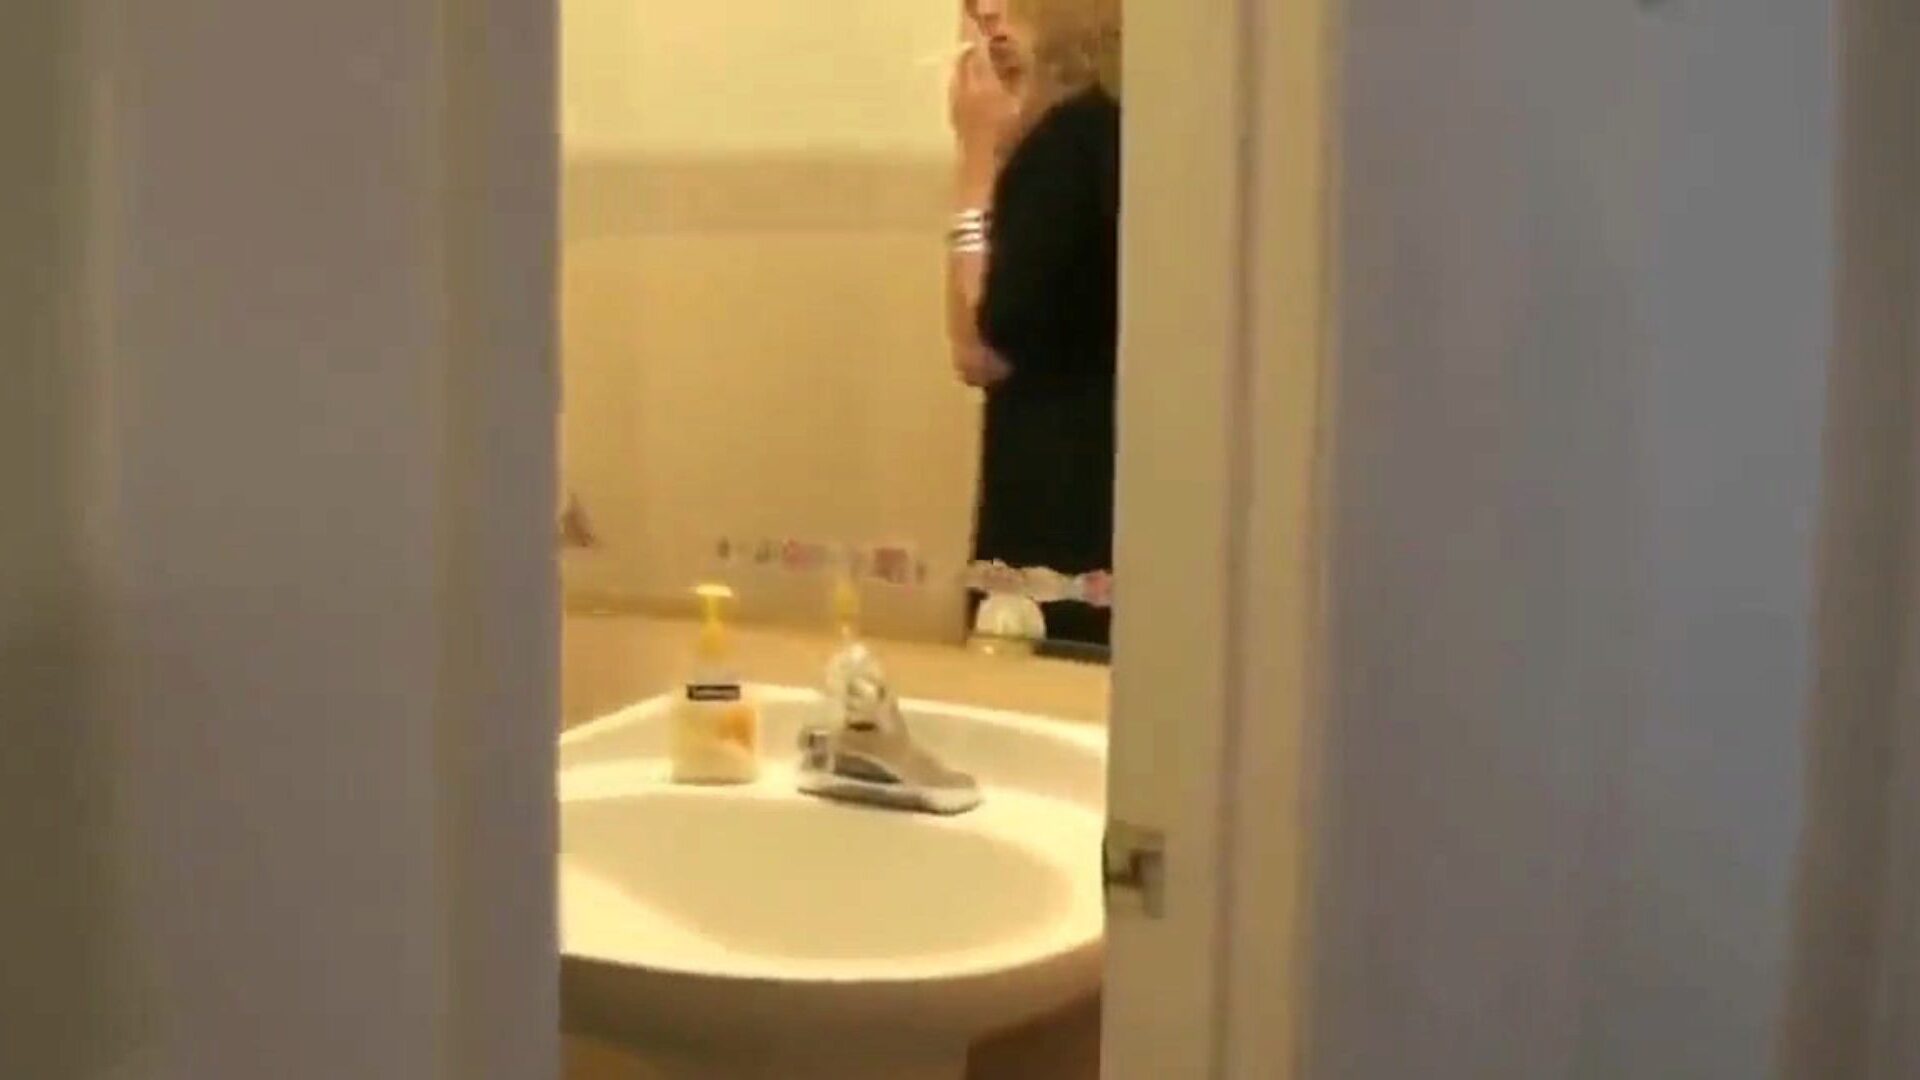 mama fumătoare o surprinde pe fiul care o spionează în baie ... urmărește-o pe mama fumătoare o surprinde pe fiul care o spionează în baie episodul de rol pe xhamster - ultimul grup de mame xxx gratuite gratuite și mame mobile gratuite hd pornografie clipuri tub